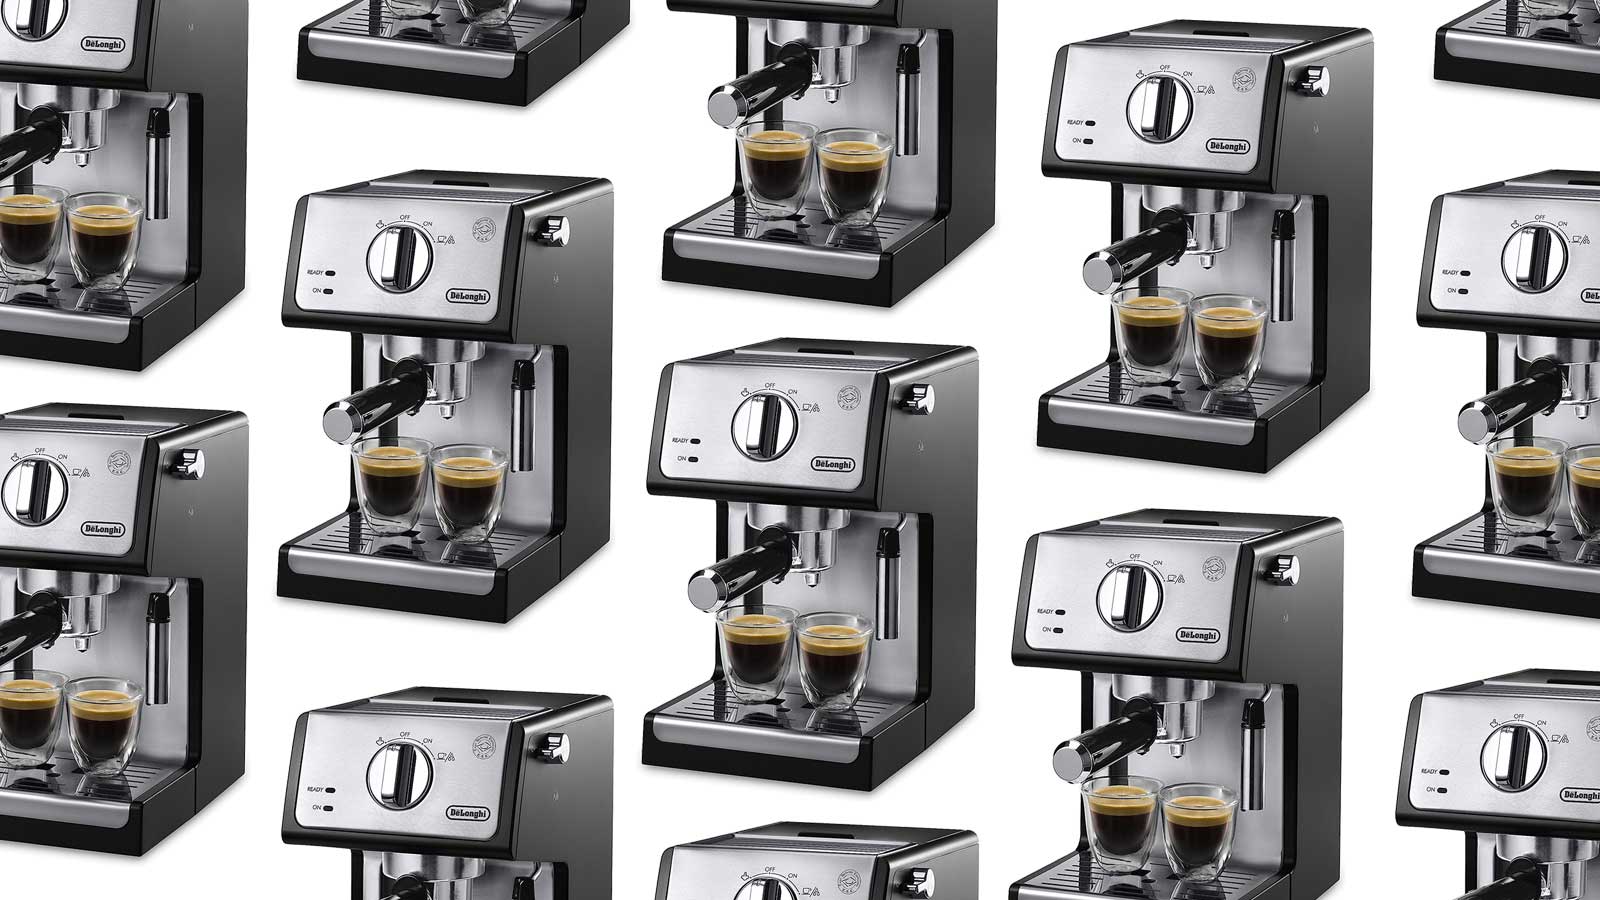 De'Longhi Delonghi All in One Combination Espresso & Coffee Maker